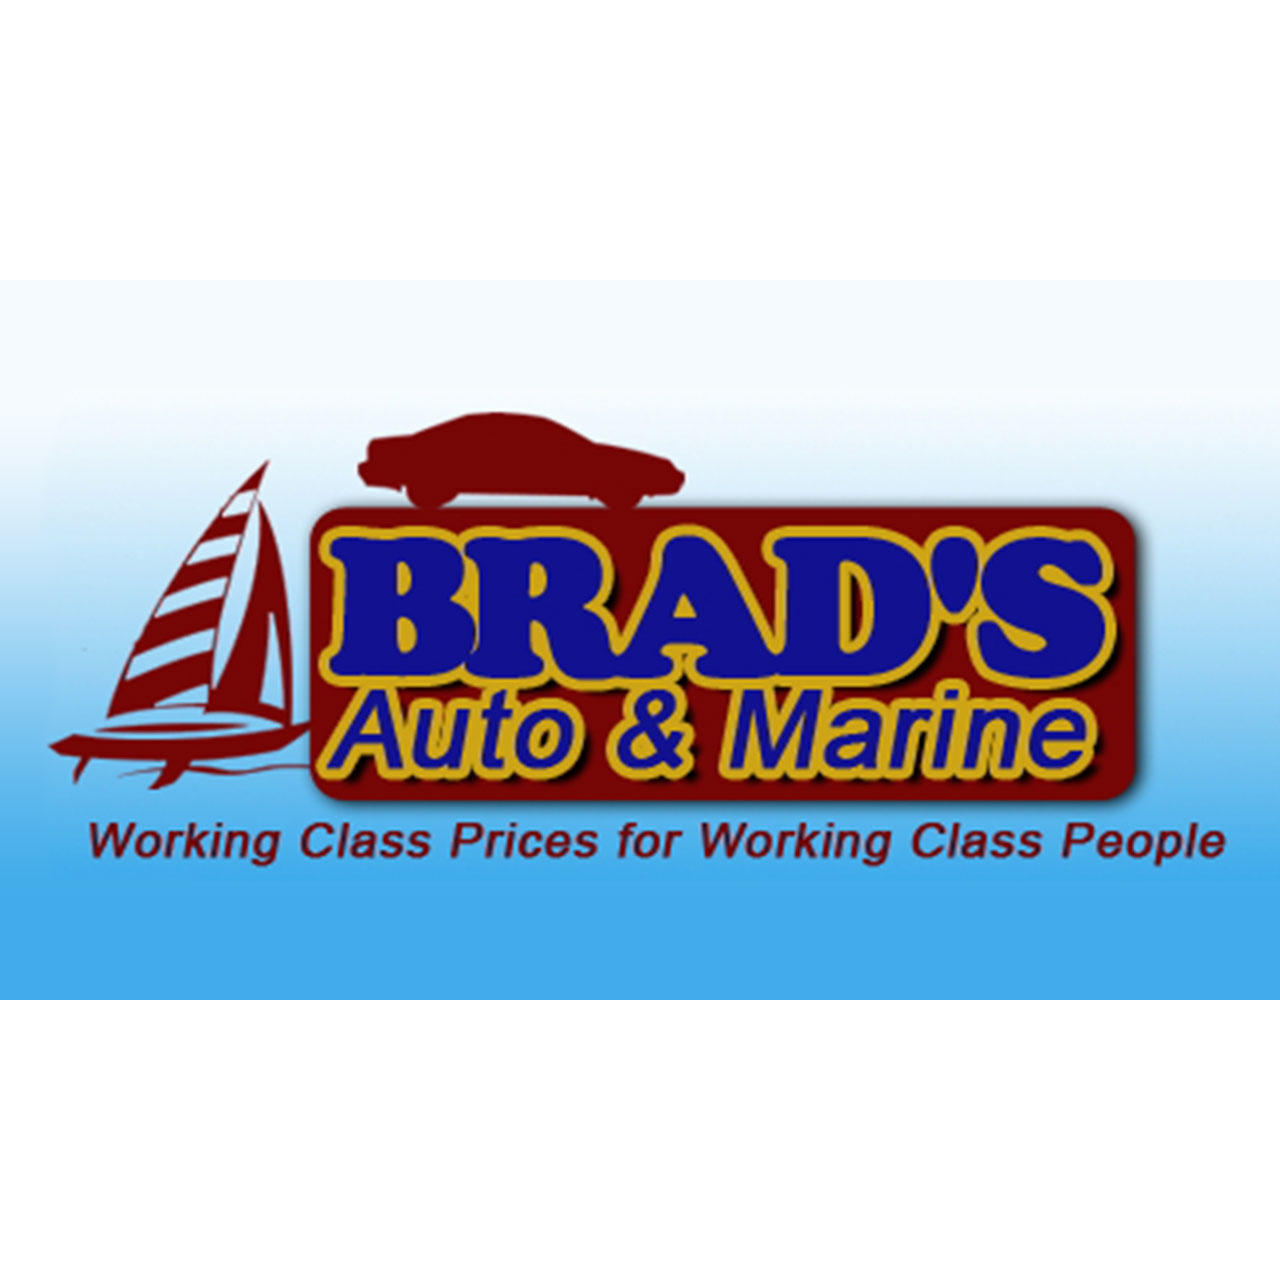 Brad's Auto & Marine - Medina, OH 44256 - (330)725-7330 | ShowMeLocal.com